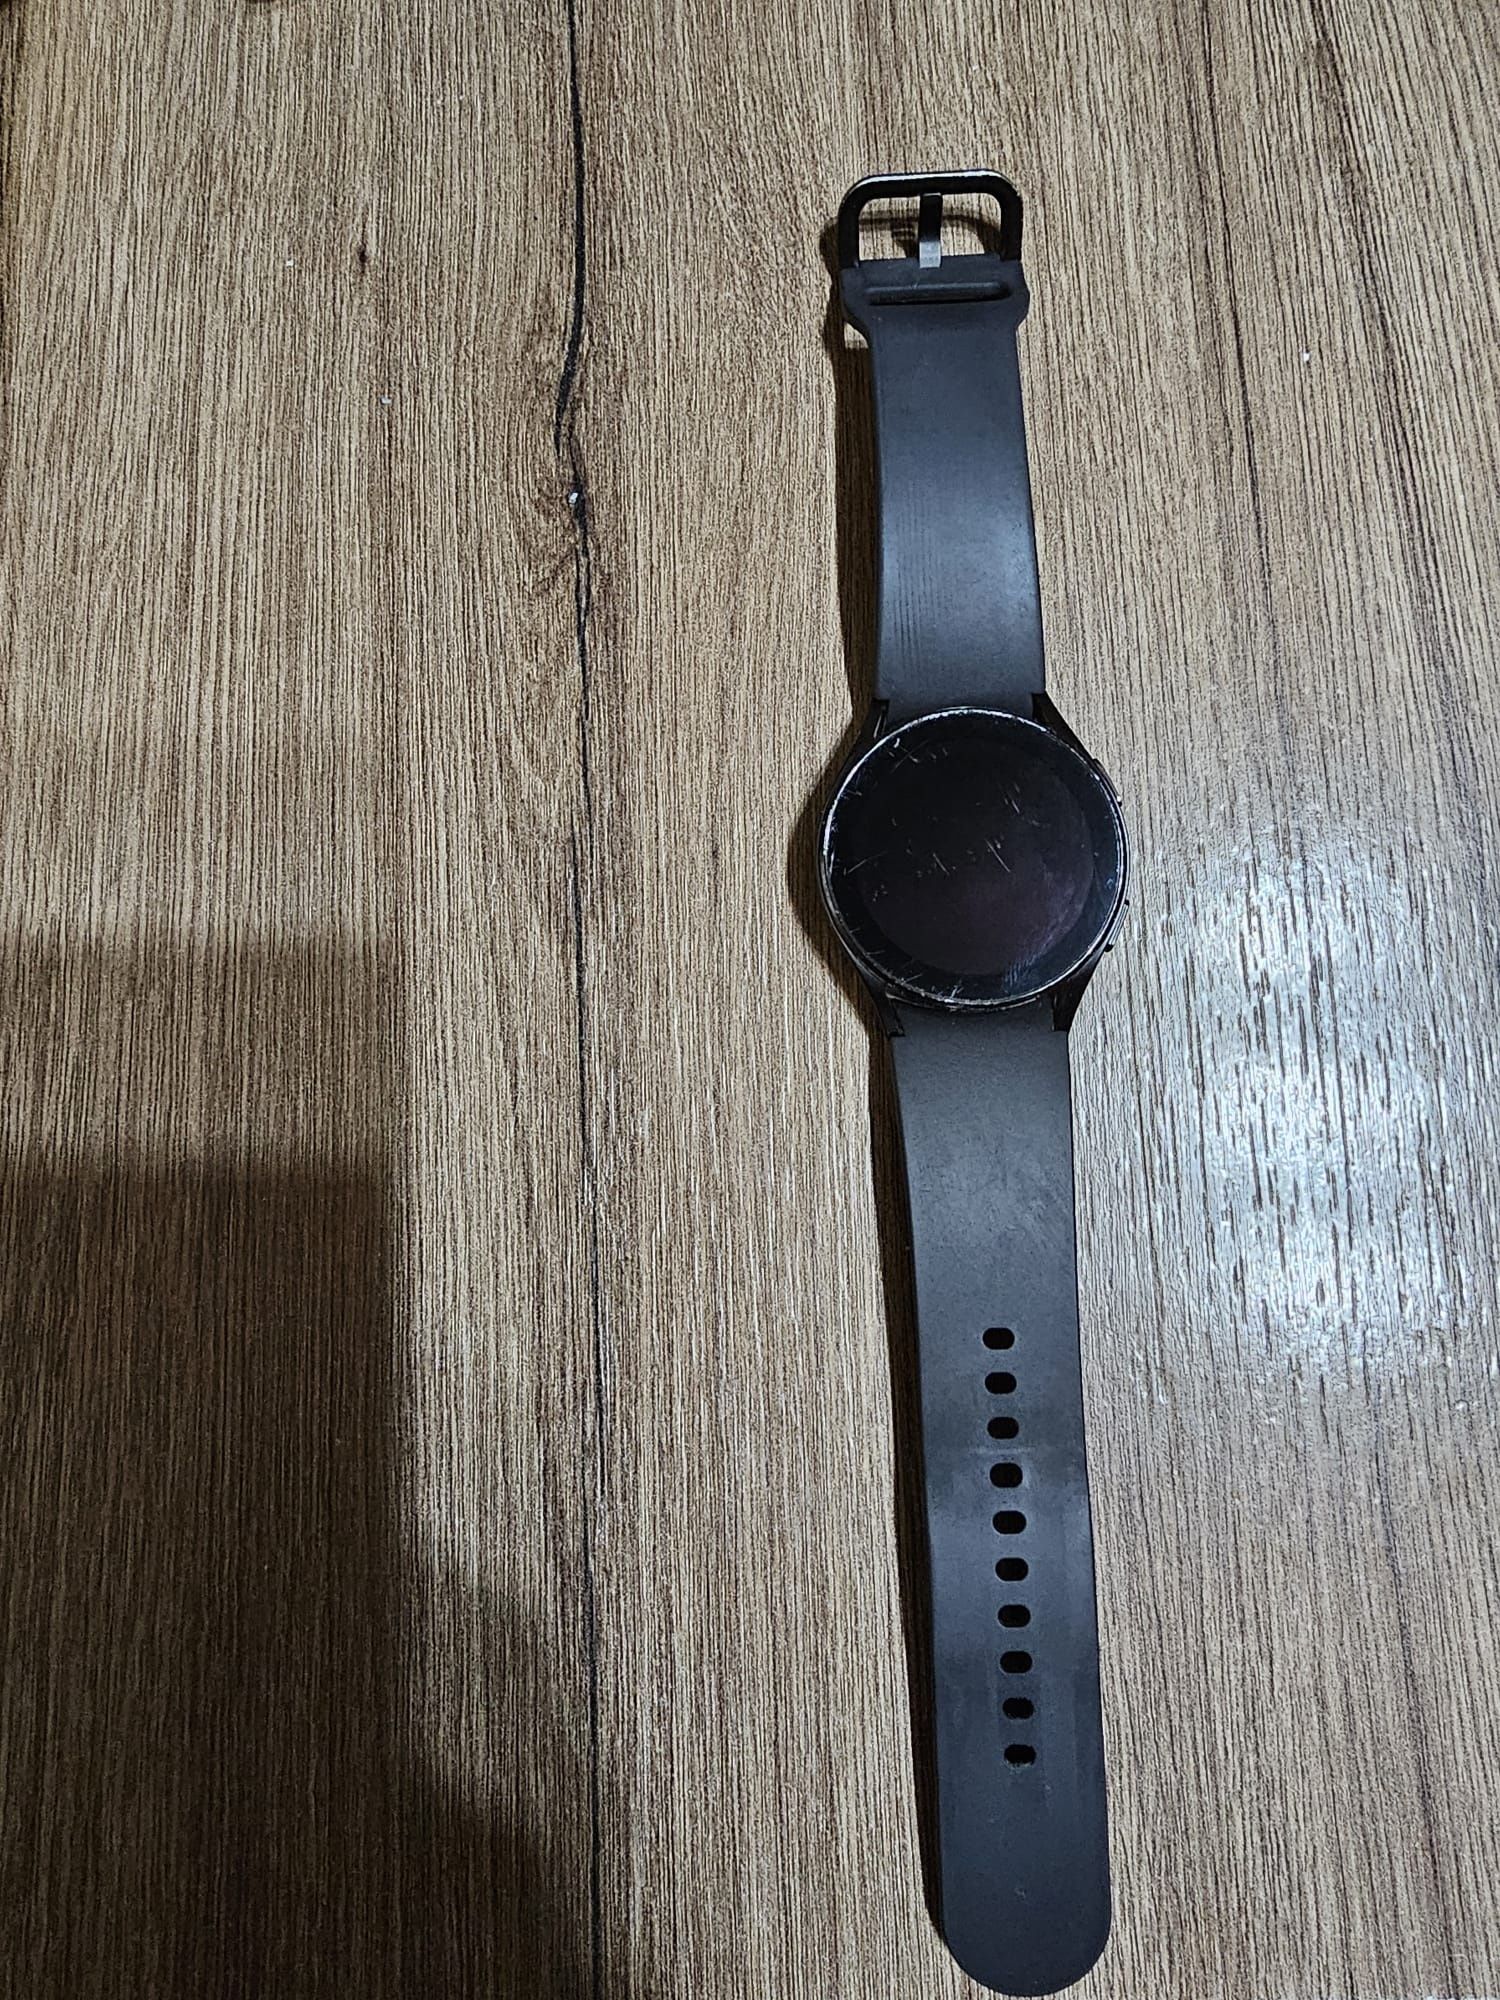 Samsung watch 4 bt